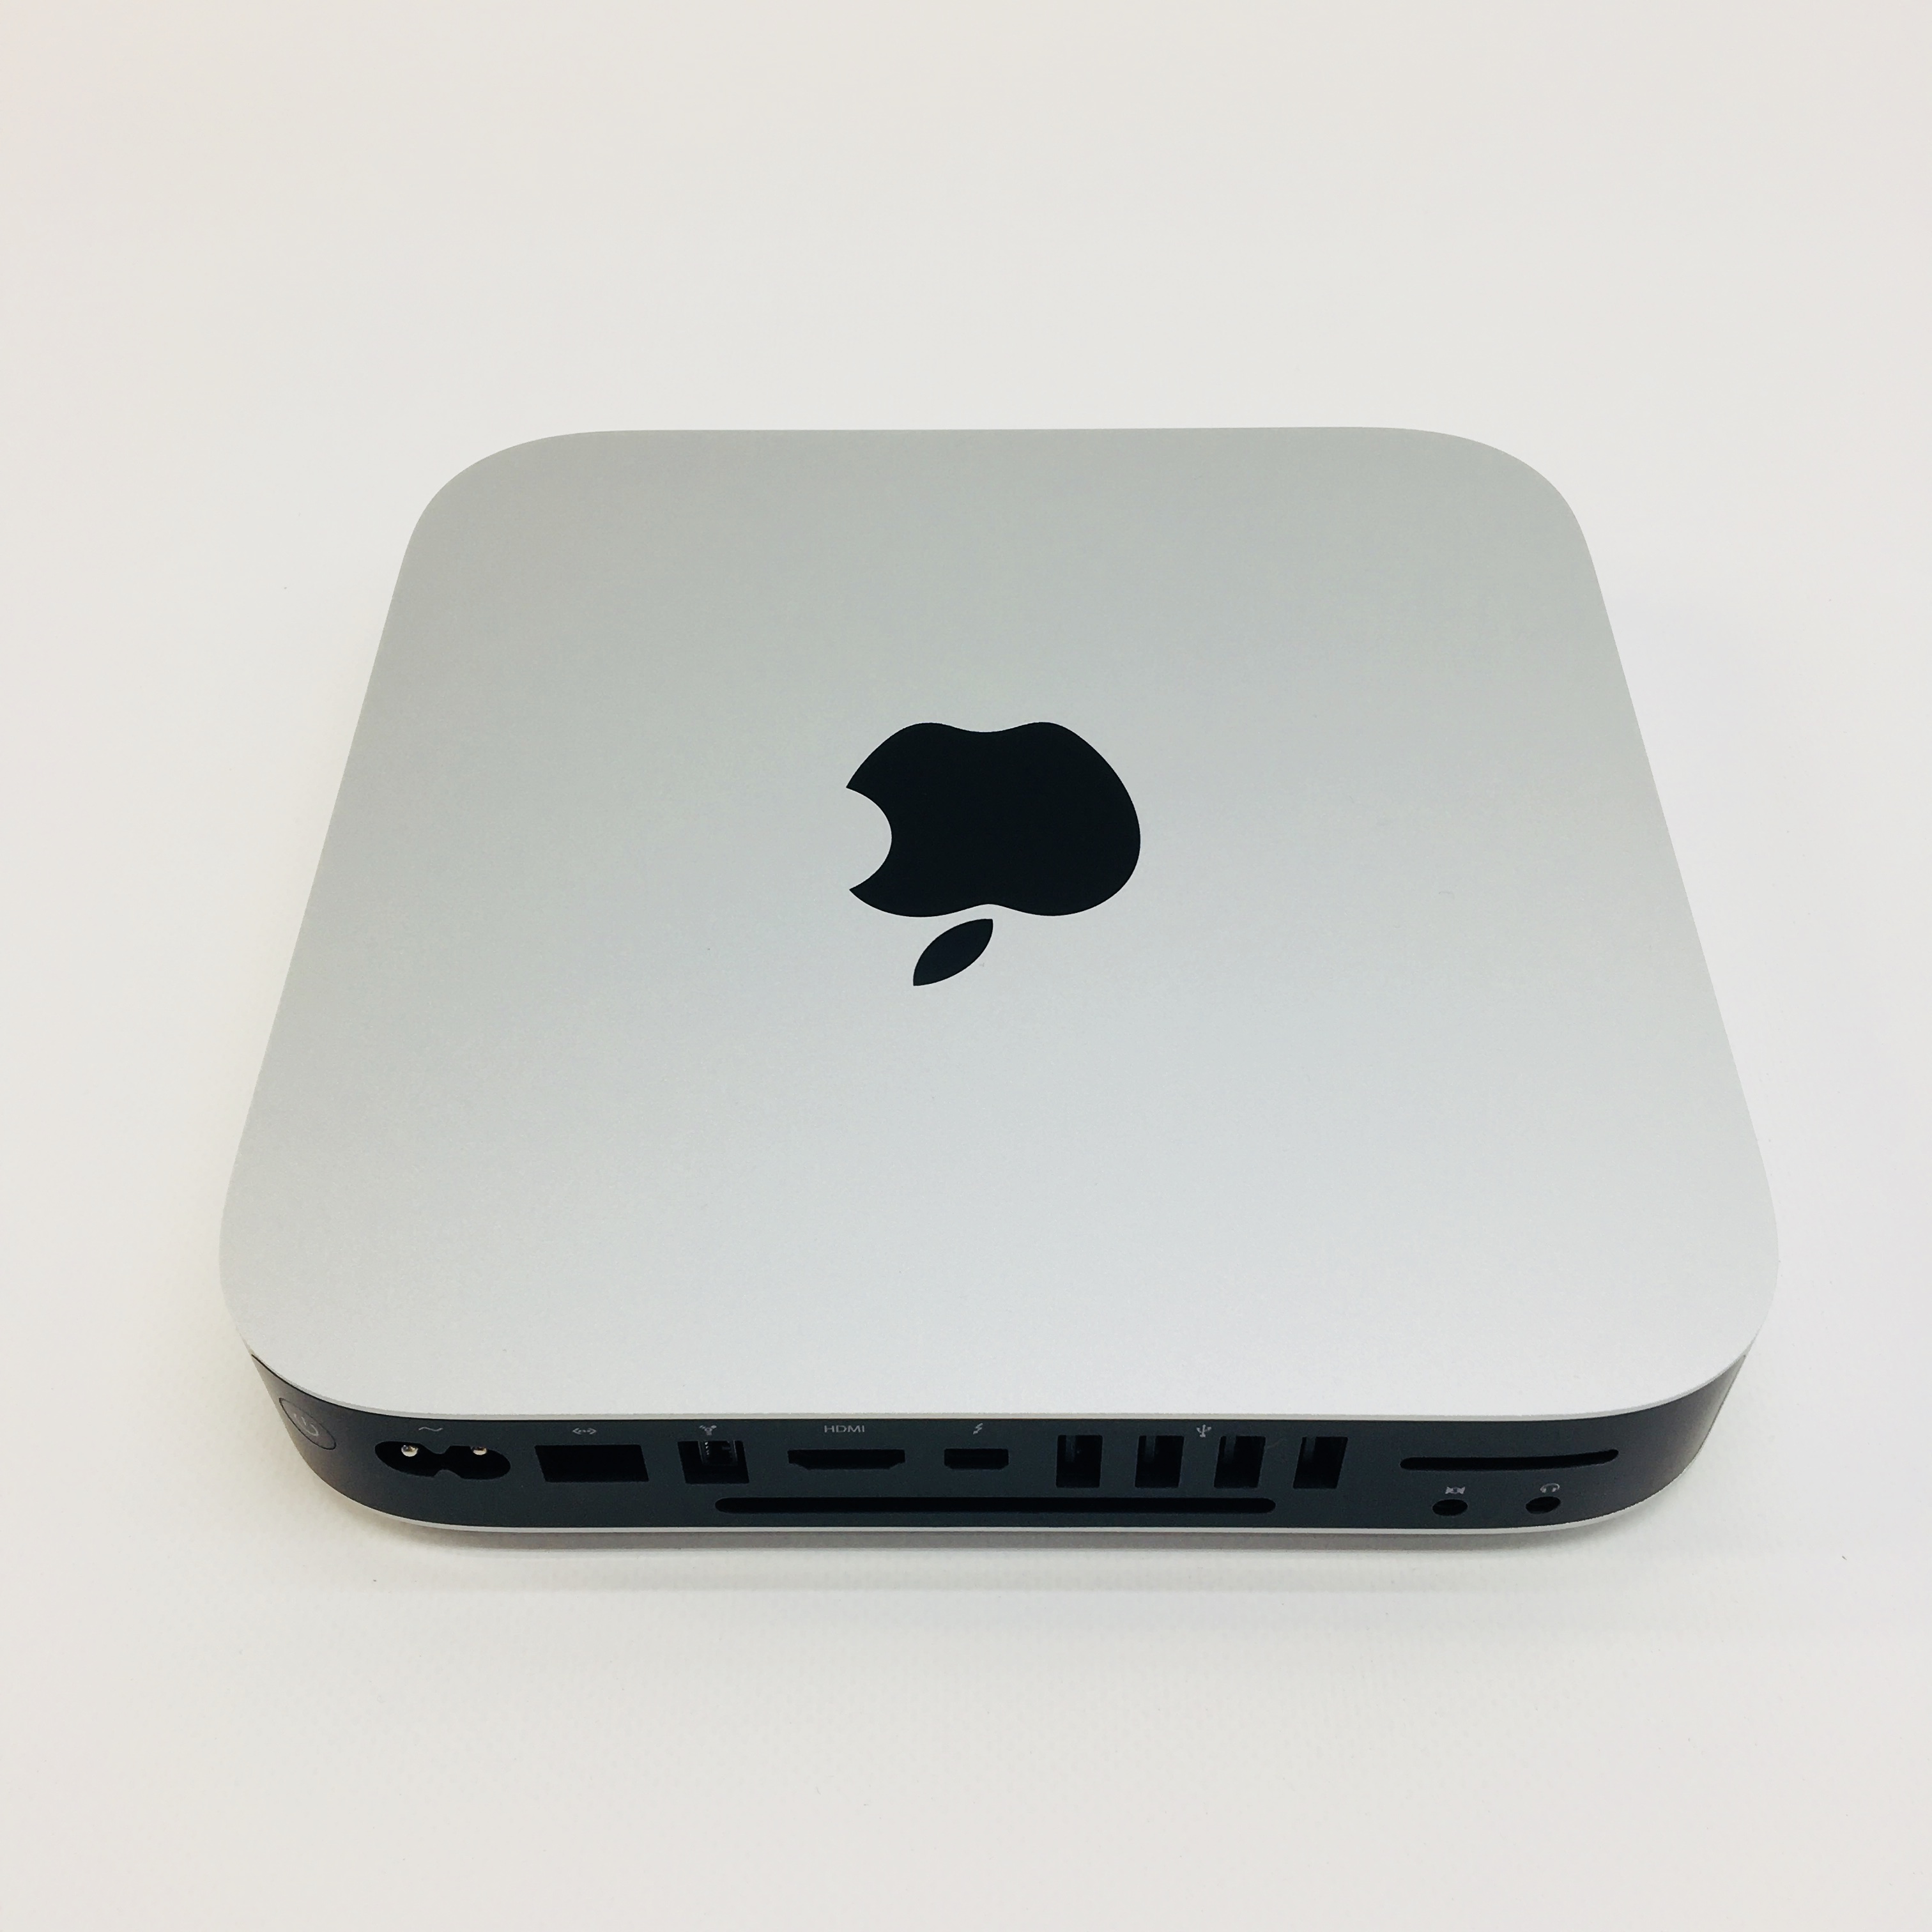 mac mini i7 quad core 16gb ram